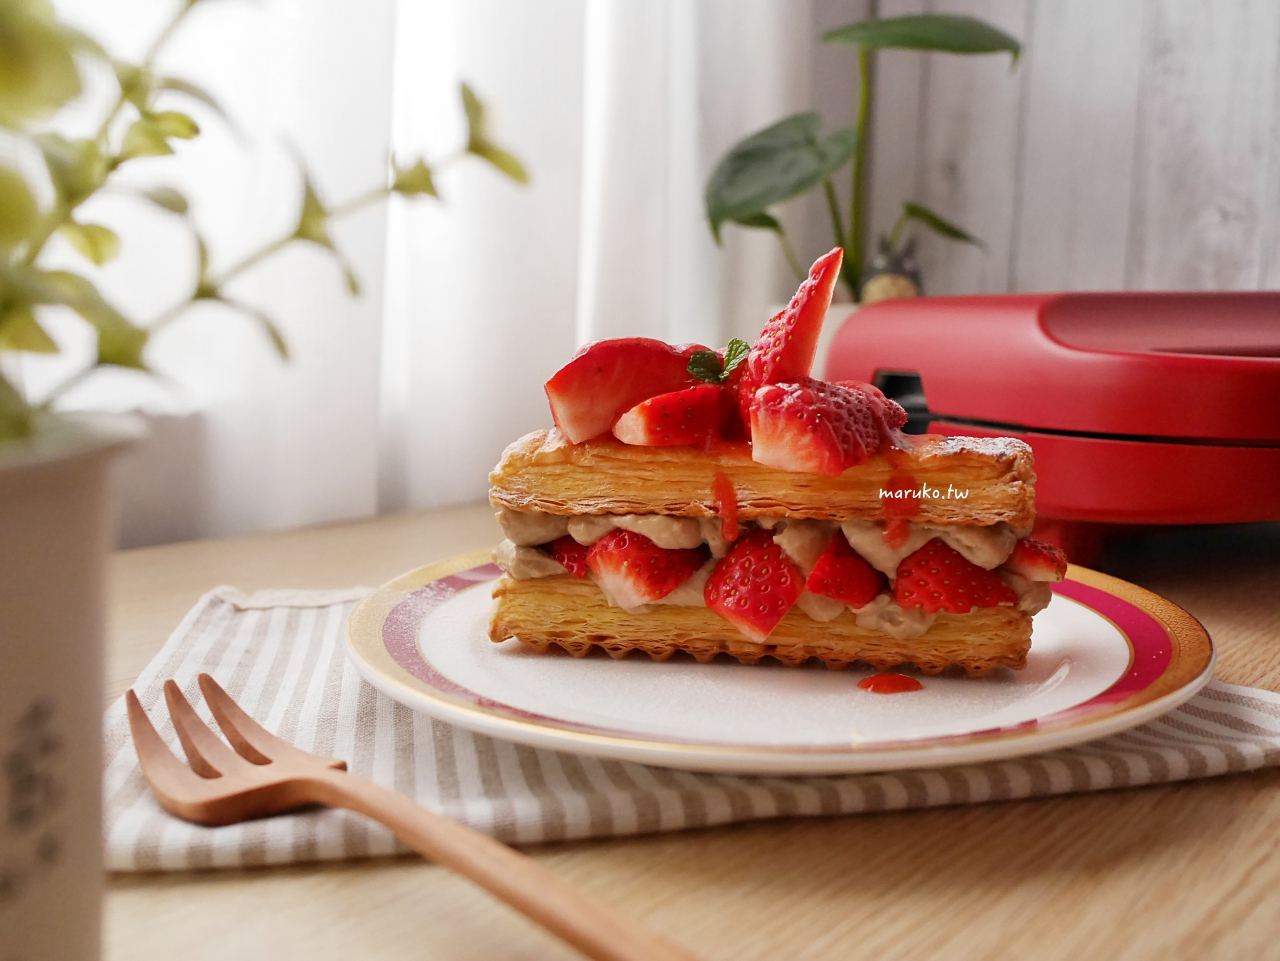 【食譜】草莓千層派 用冷凍起酥片做派皮,Vitantonio 鬆餅機,帕里尼烤盤運用分享